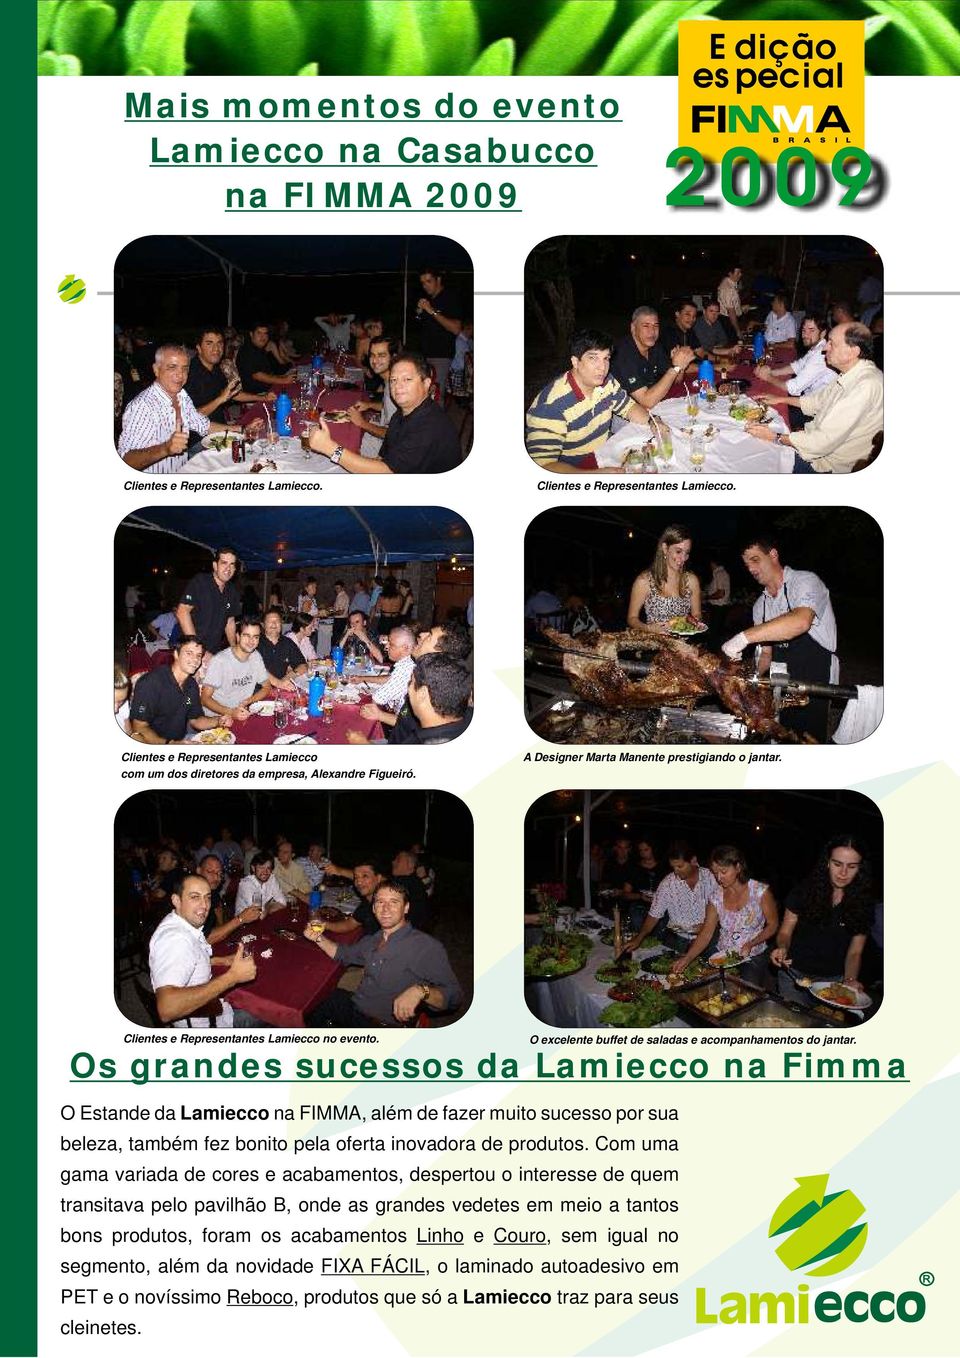 Os grandes sucessos da Lamiecco na Fimma O Estande da Lamiecco na FIMMA, além de fazer muito sucesso por sua beleza, também fez bonito pela oferta inovadora de produtos.